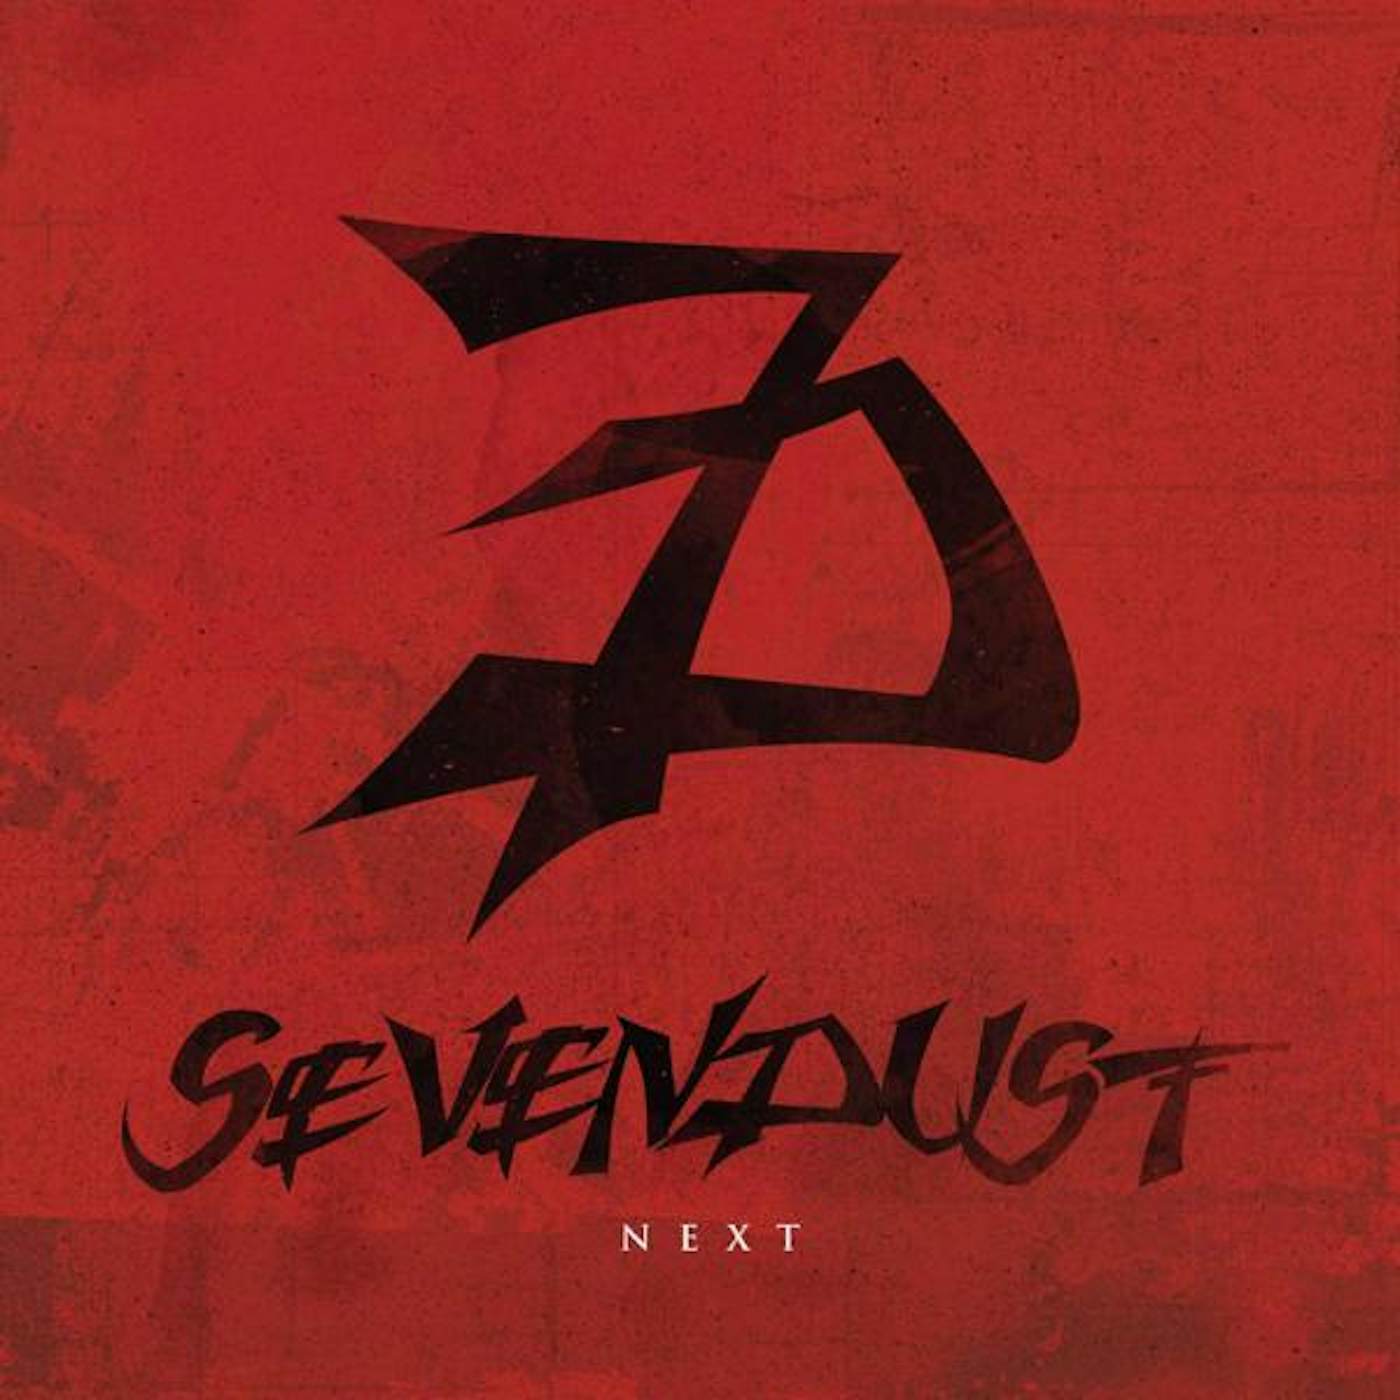 Sevendust Next Vinyl Record